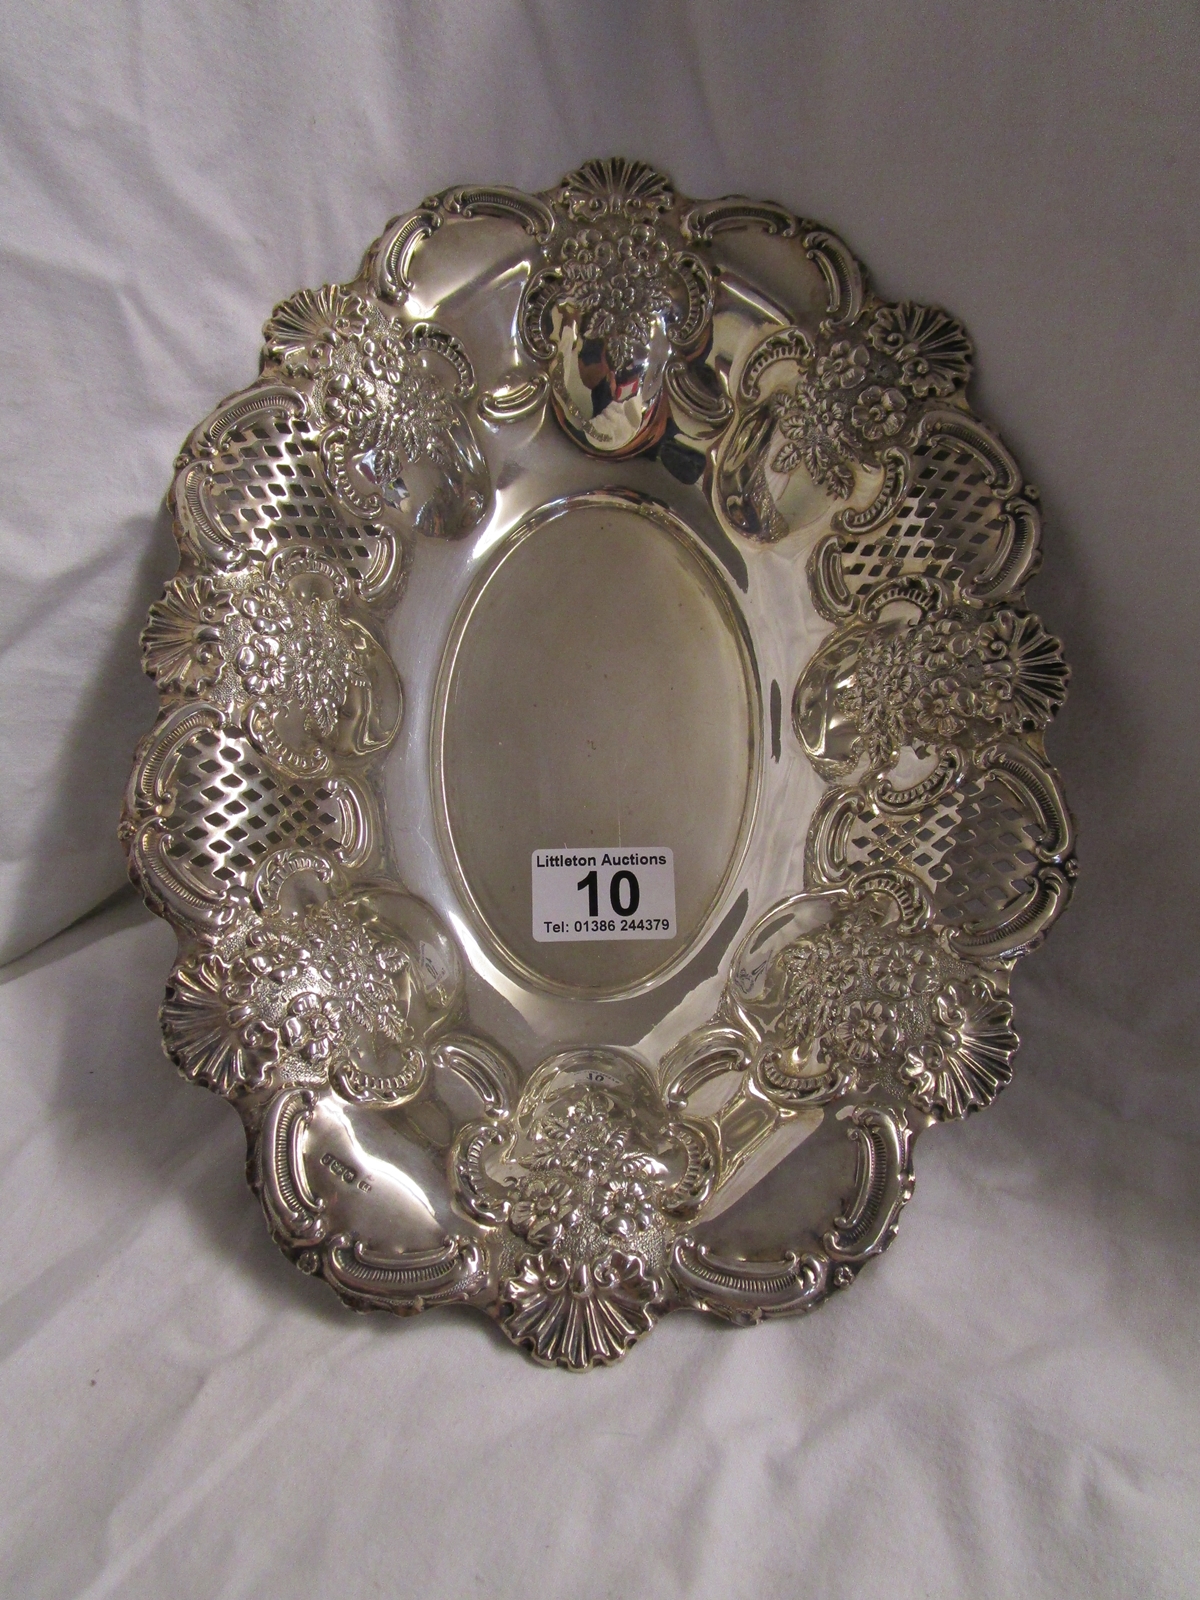 Pierced silver dish - Appox 362g